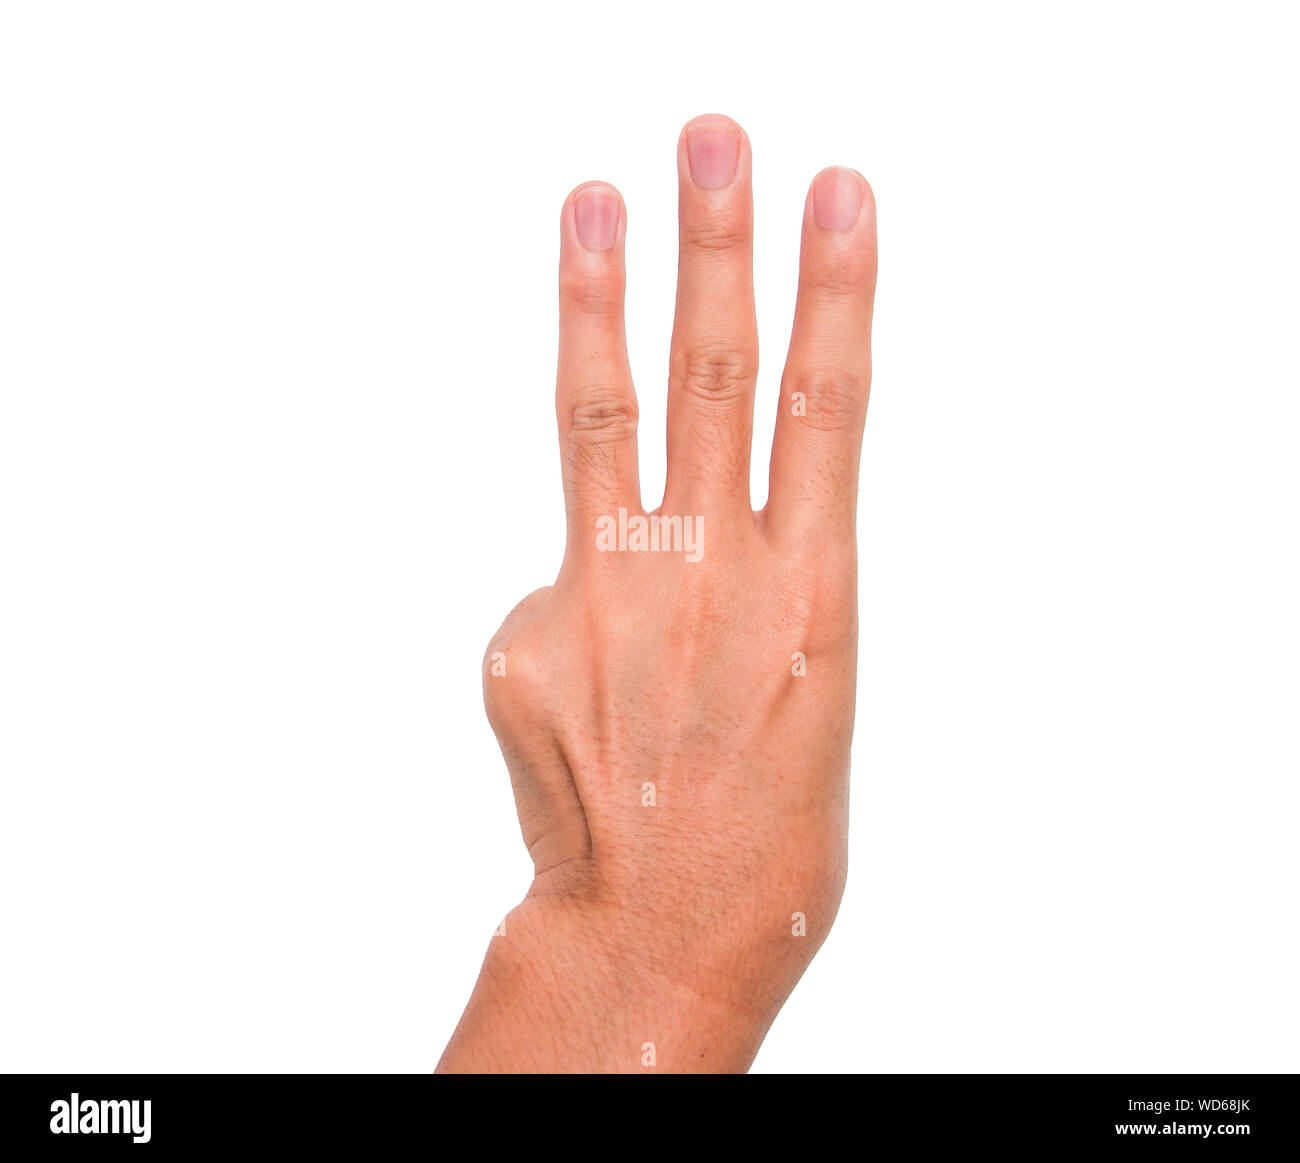 Imagen recortada de la persona mostrando tres dedos contra el fondo blanco. Foto de stock